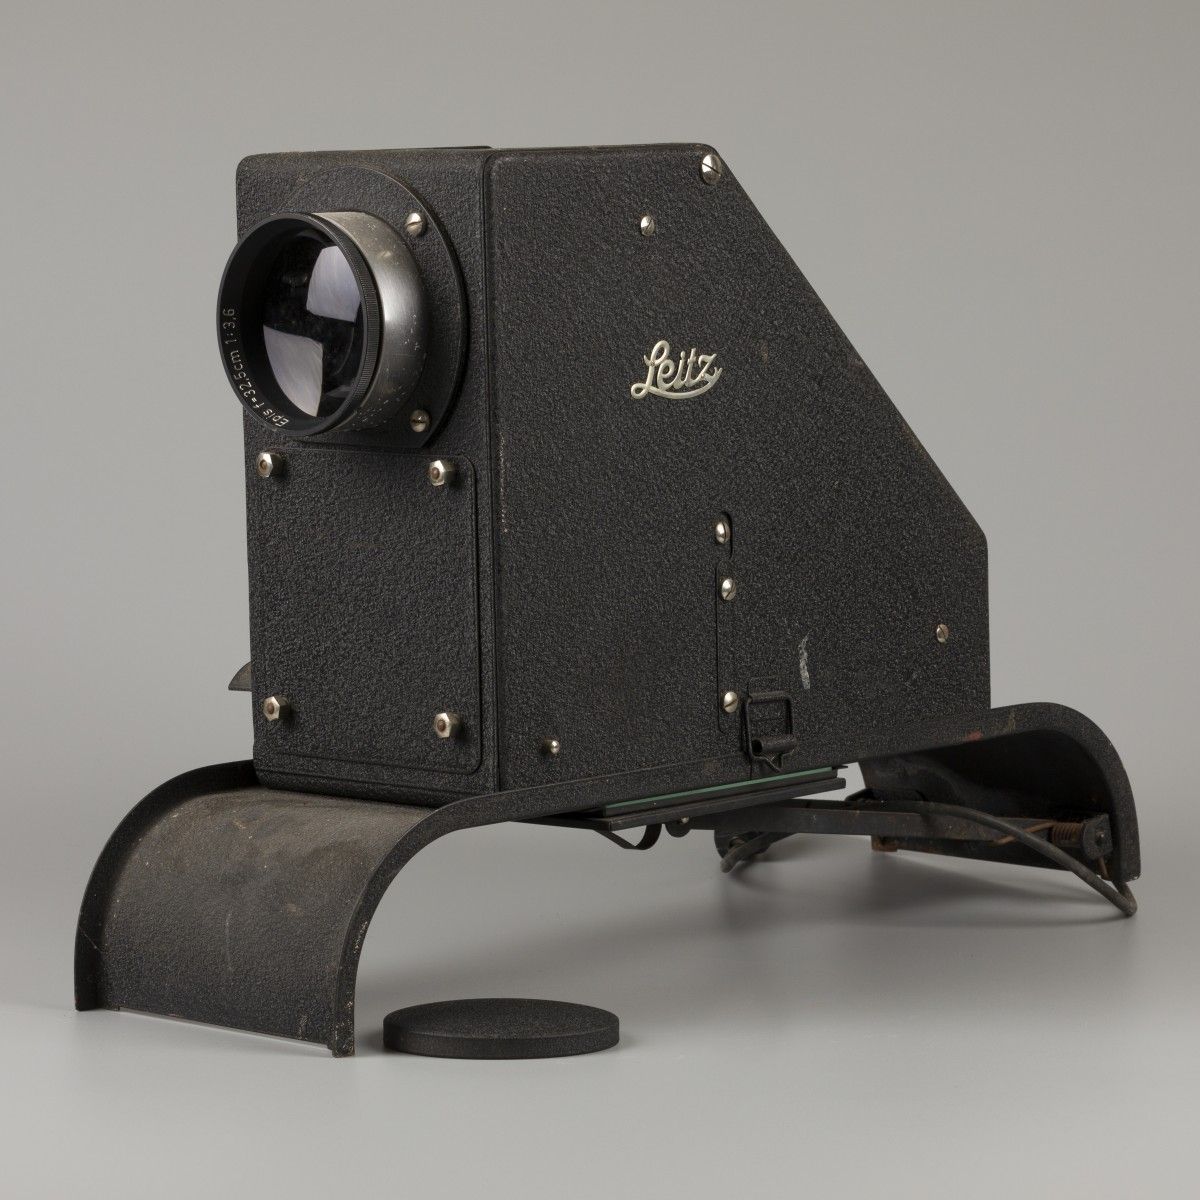 A Leitz Wetzlar epidiascope. Número de serie: A79294